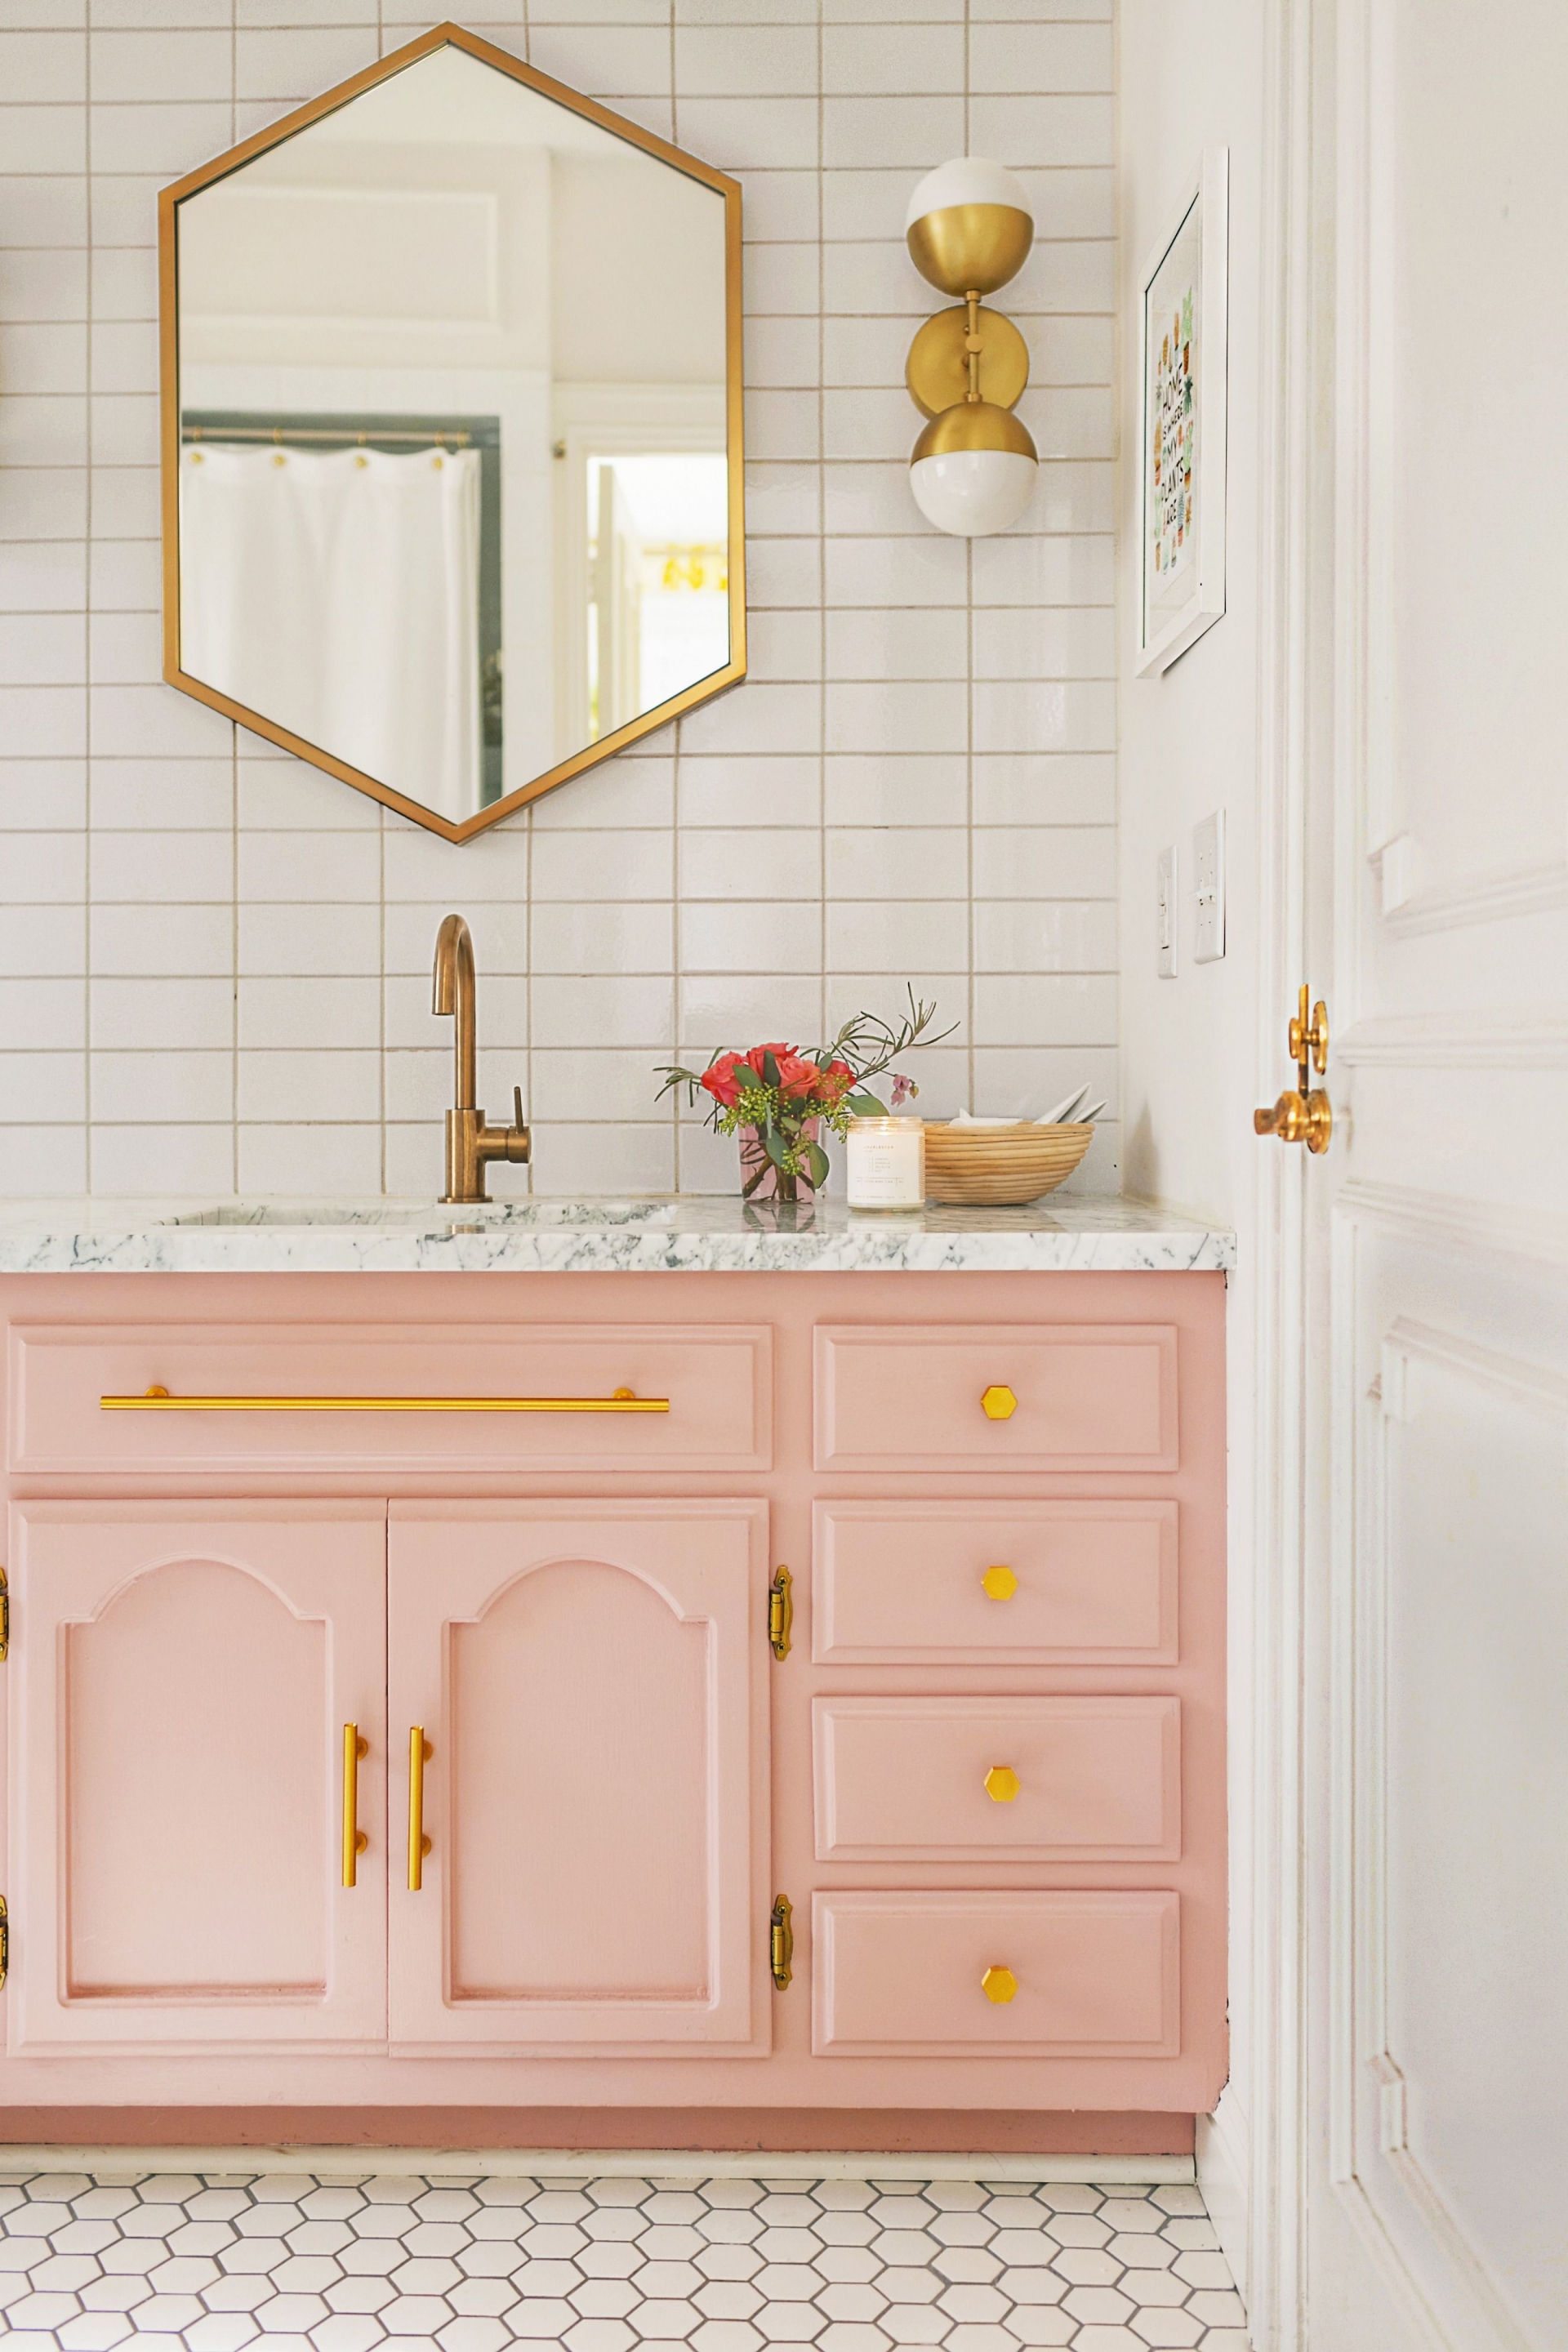 Chiếc tủ sơn màu hồng cho những cô nàng “kẹo ngọt”. Phần tay nắm tủ được thay bằng màu vàng đồng cho cái nhìn vừa nữ tính vừa sang trọng.